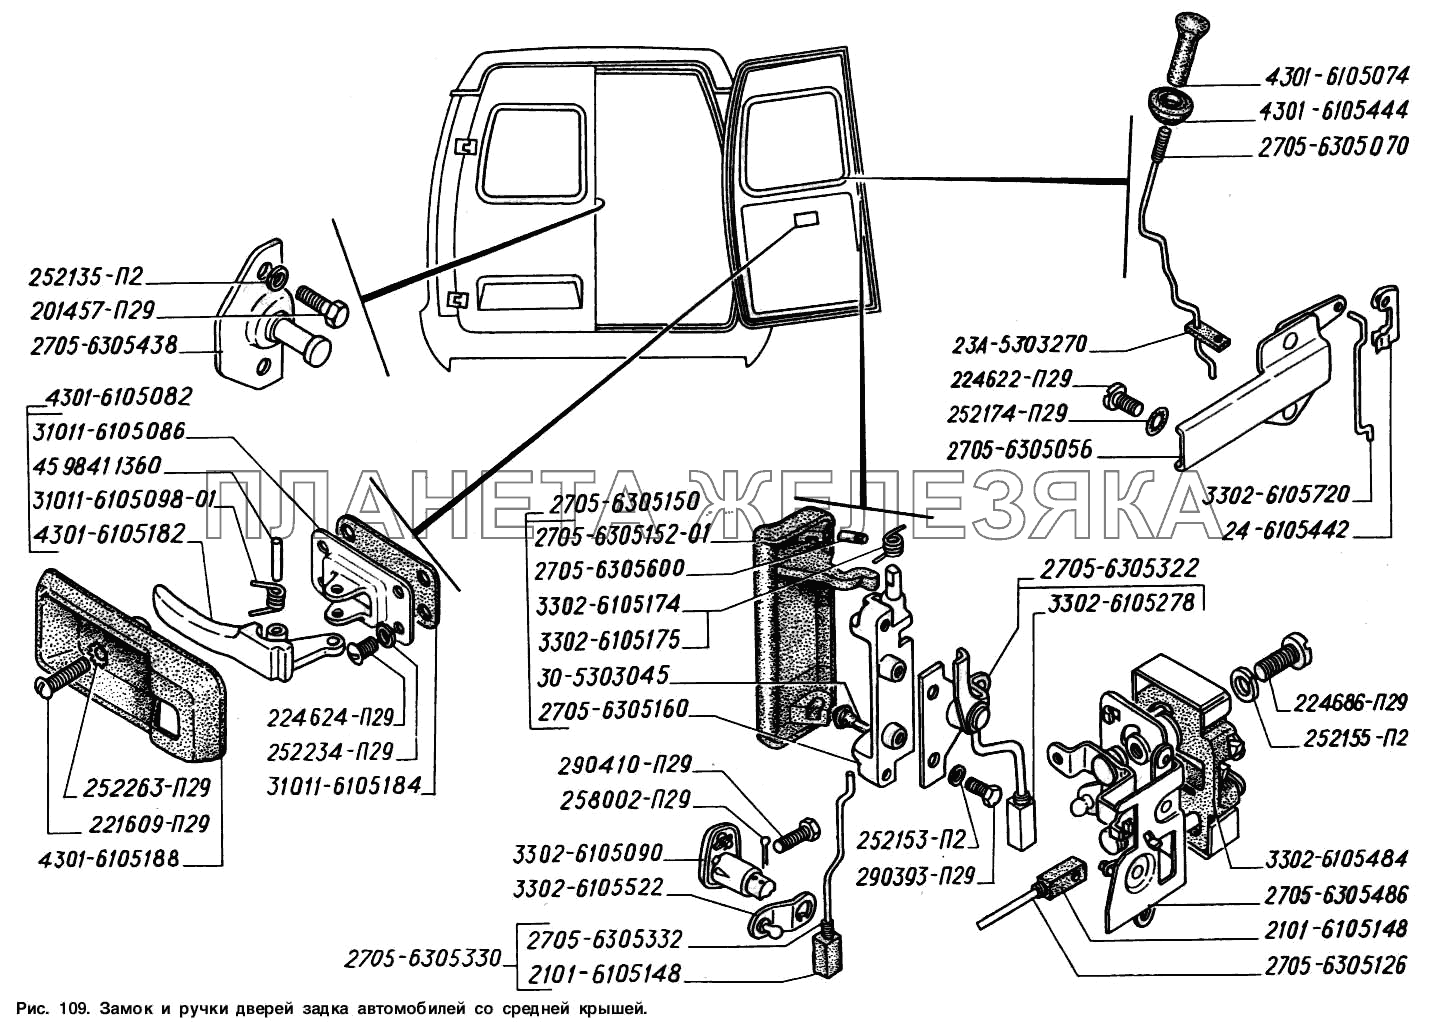 Замок и ручки дверей задка автомобилей со средней крышей ГАЗ-2217 (Соболь)